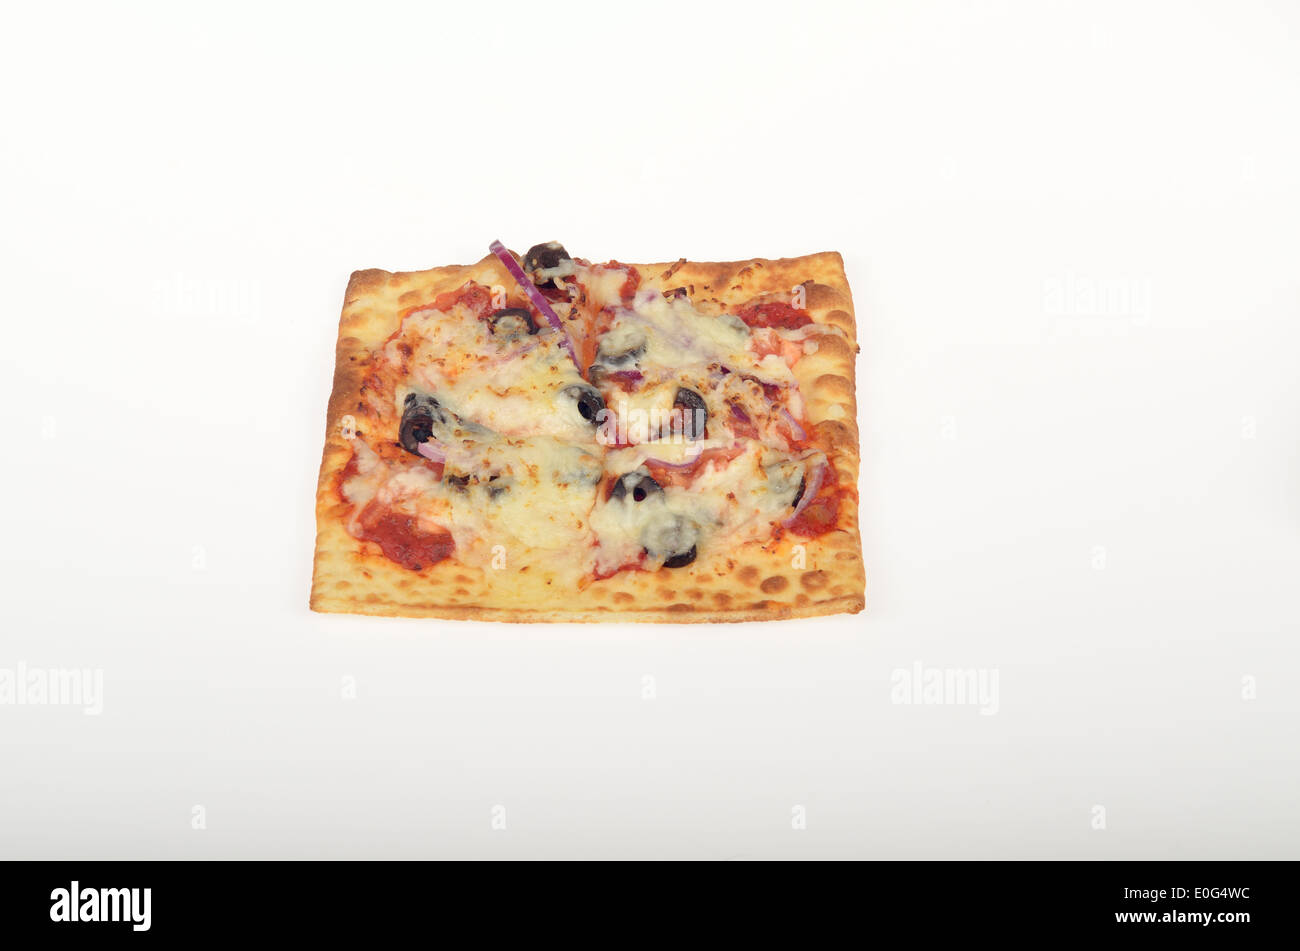 Métro Square tranche de fromage pizza Flatizza sur fond blanc, découpe. USA Banque D'Images